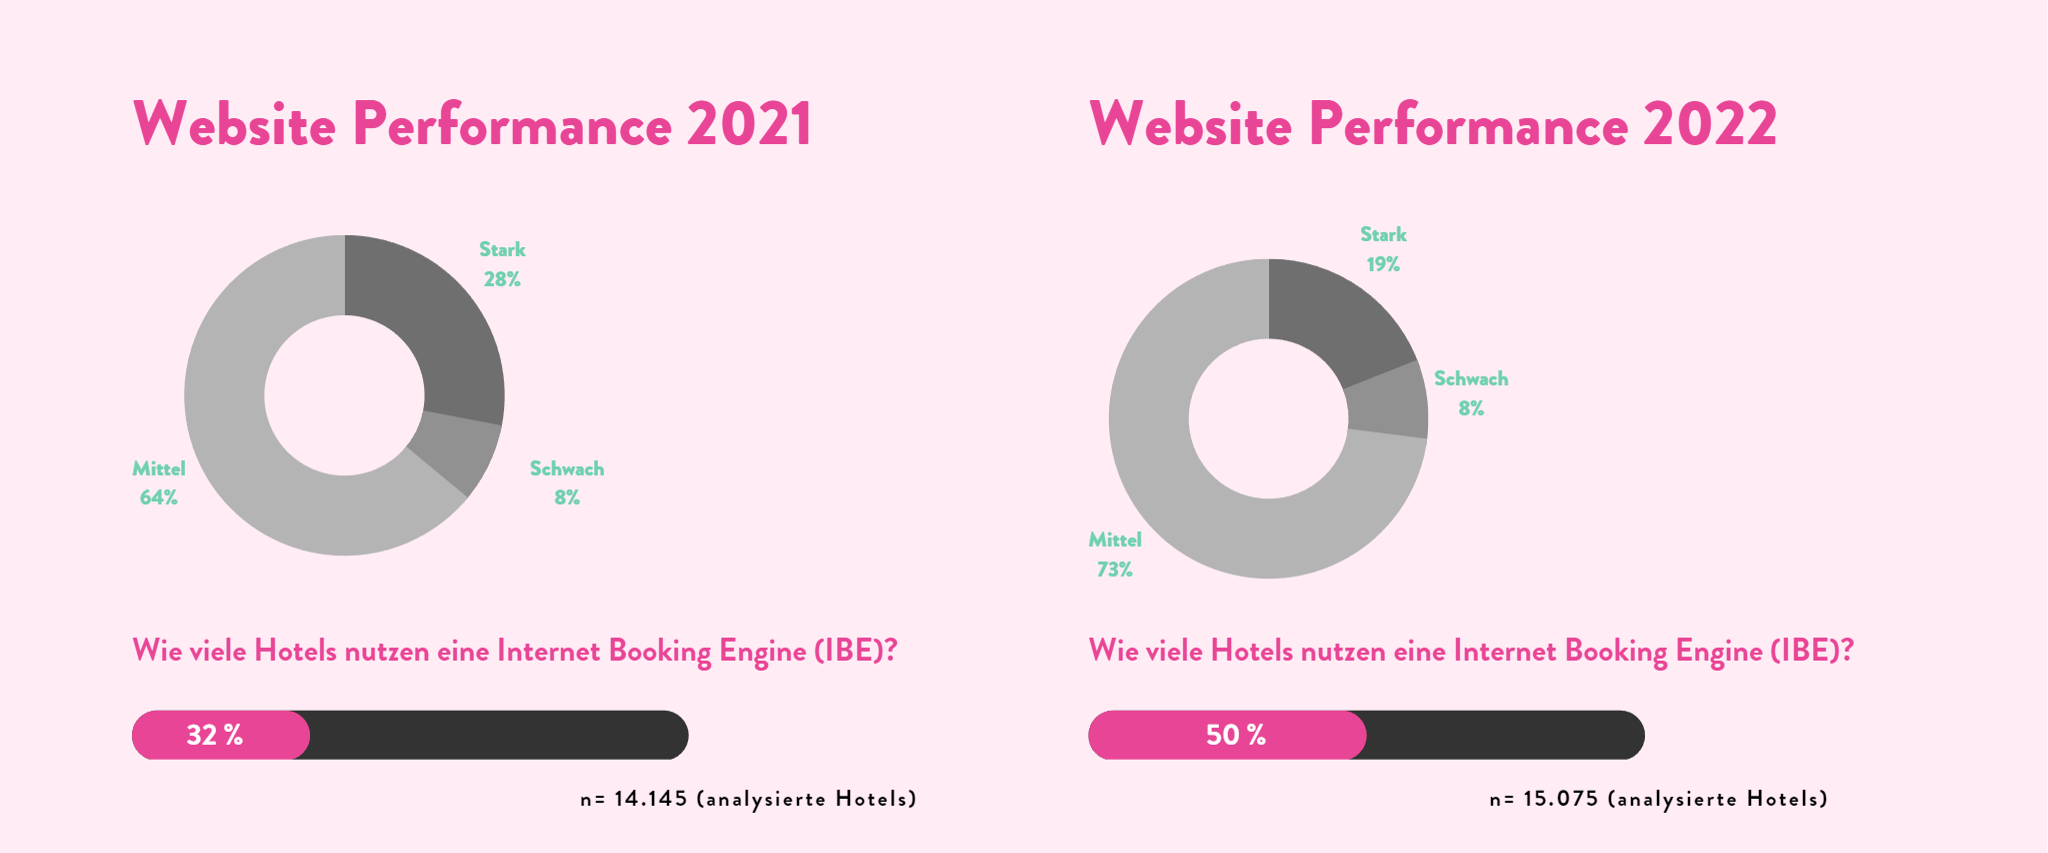 Zwei Keisdiagramme im Vergleich zum Thema Website Performance 2021 und 2022